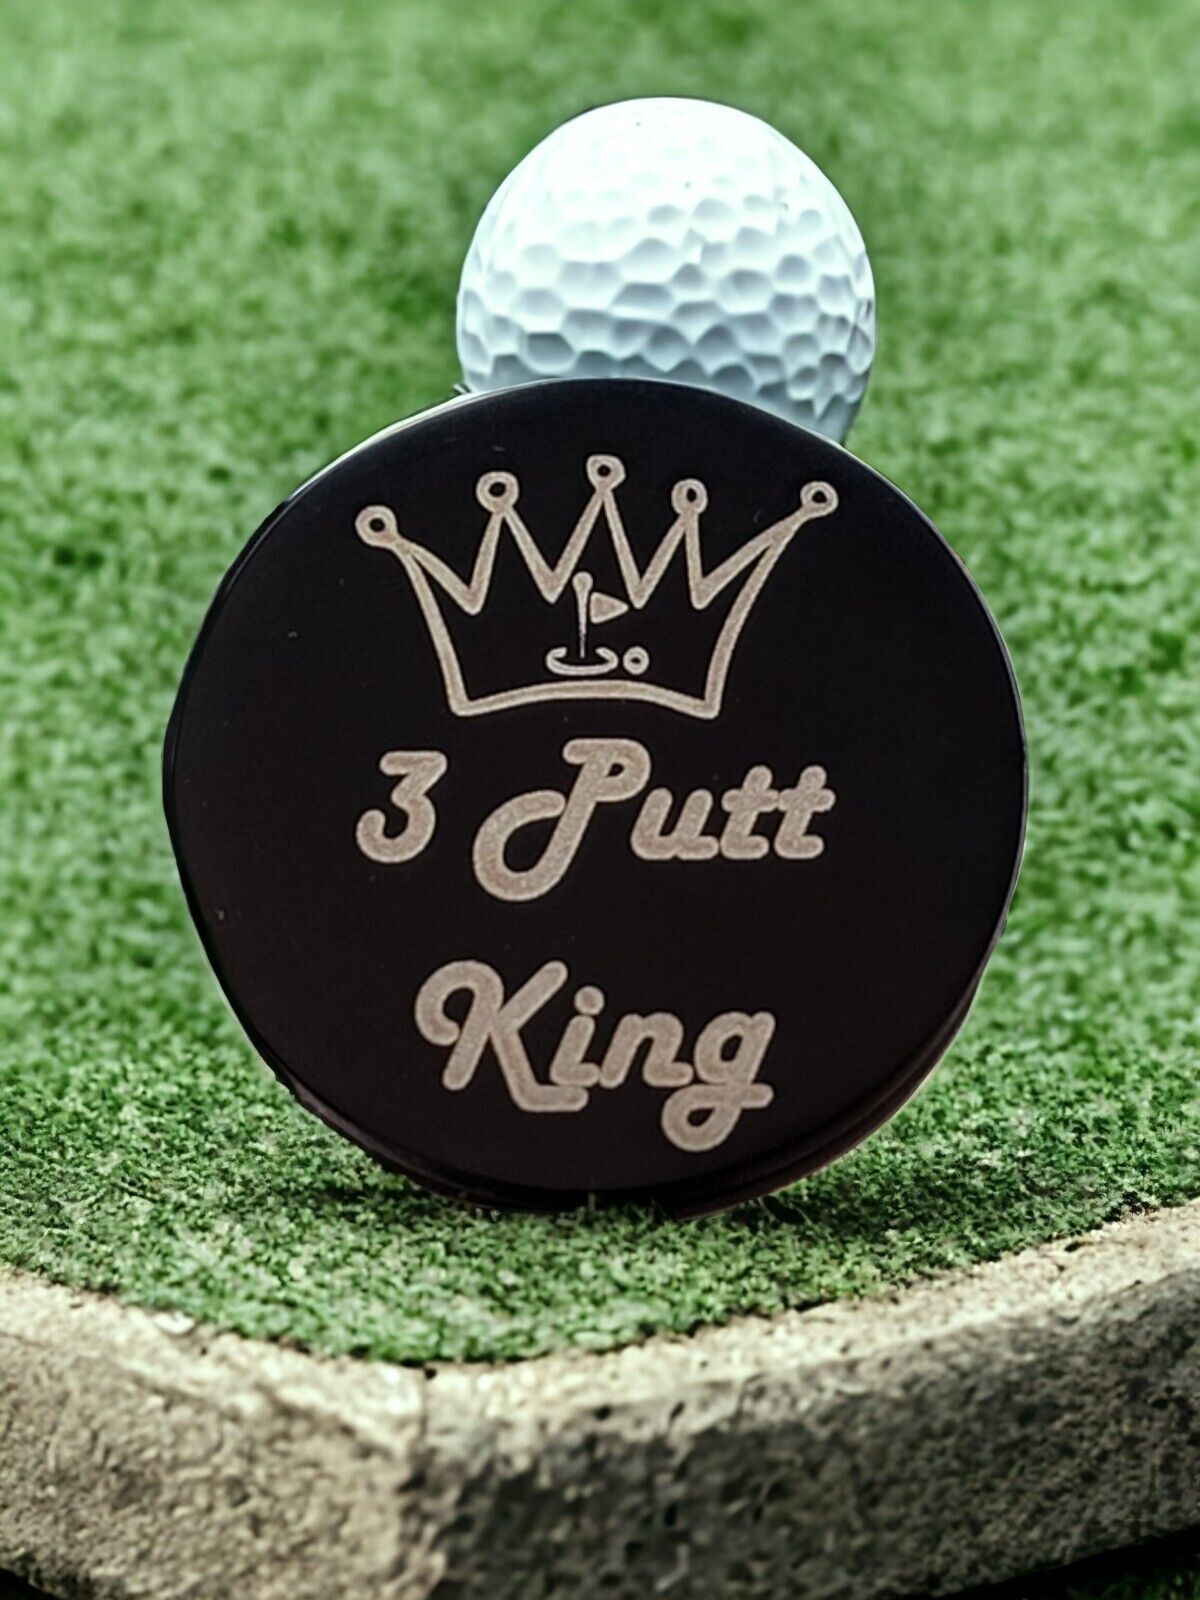 "3 Putt King"  Laser Engraved Stainless Steel Novelty Golf Ball Marker